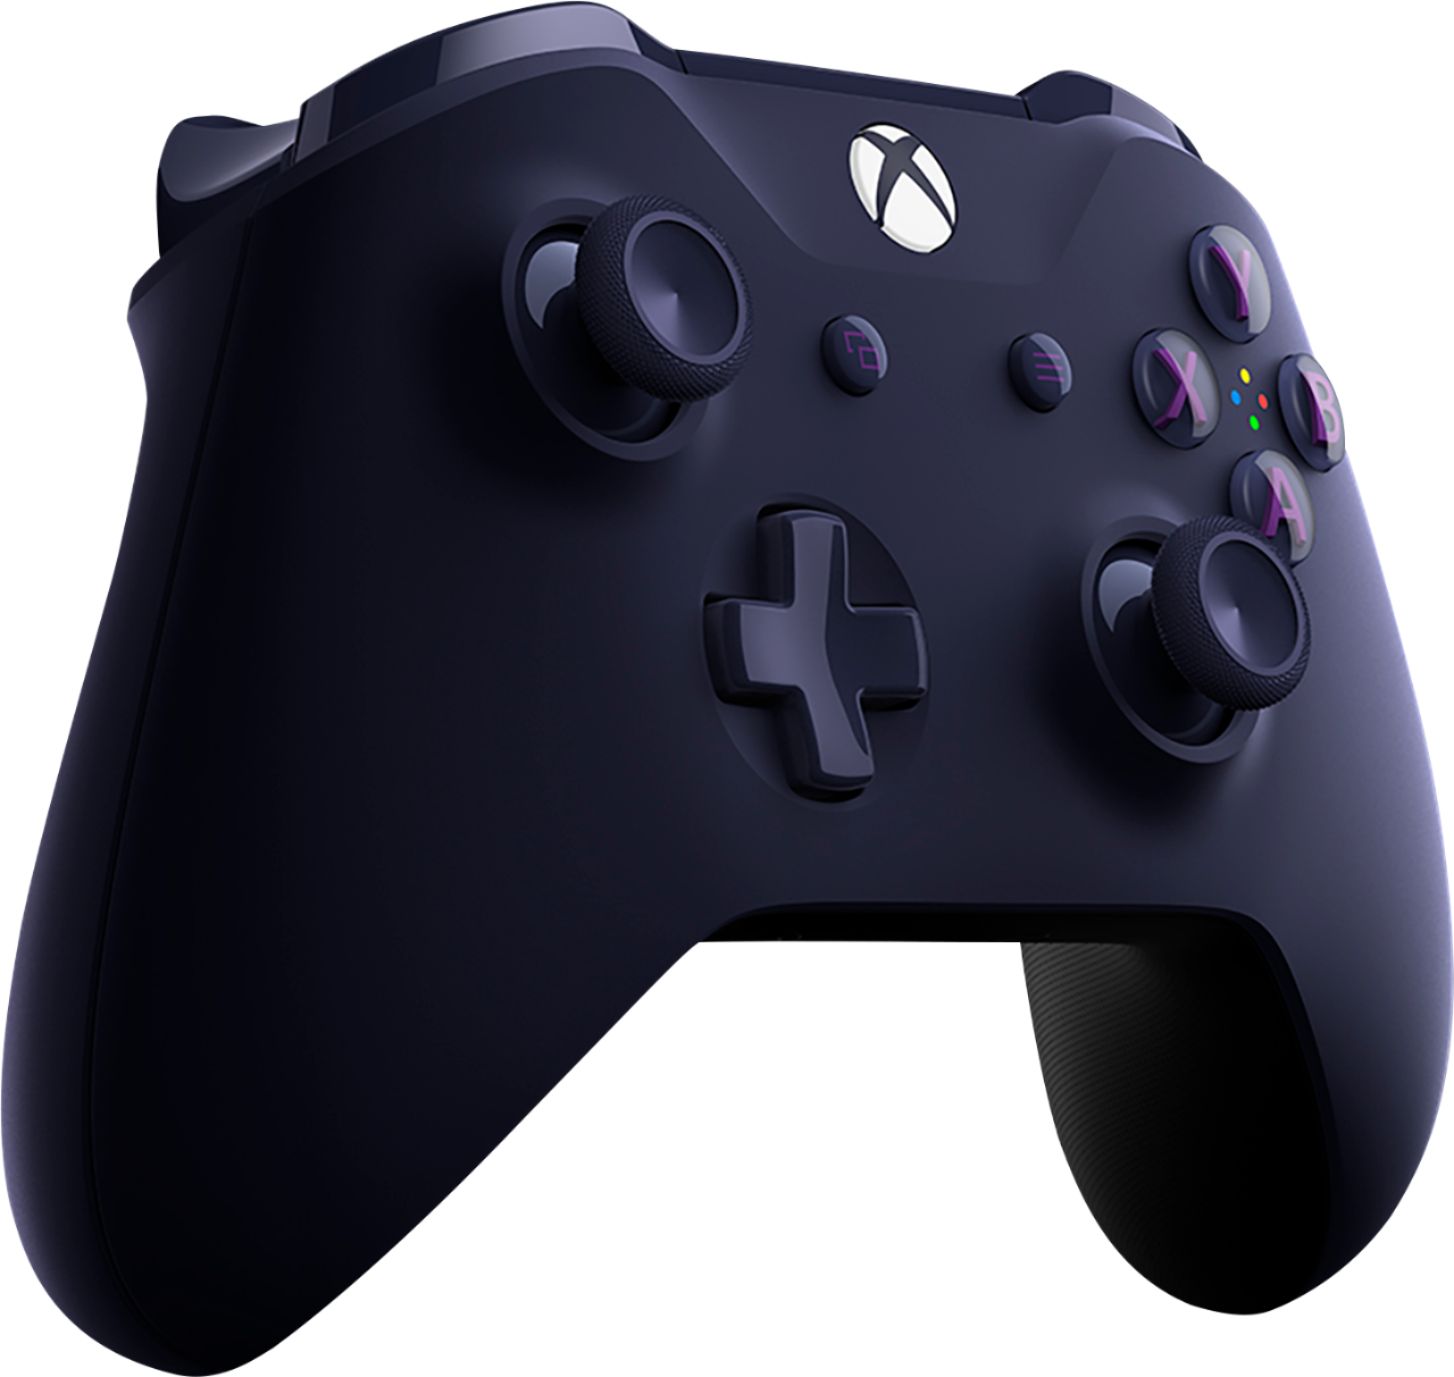 Grab A Modular Xbox Controller For Only $35 - GameSpot